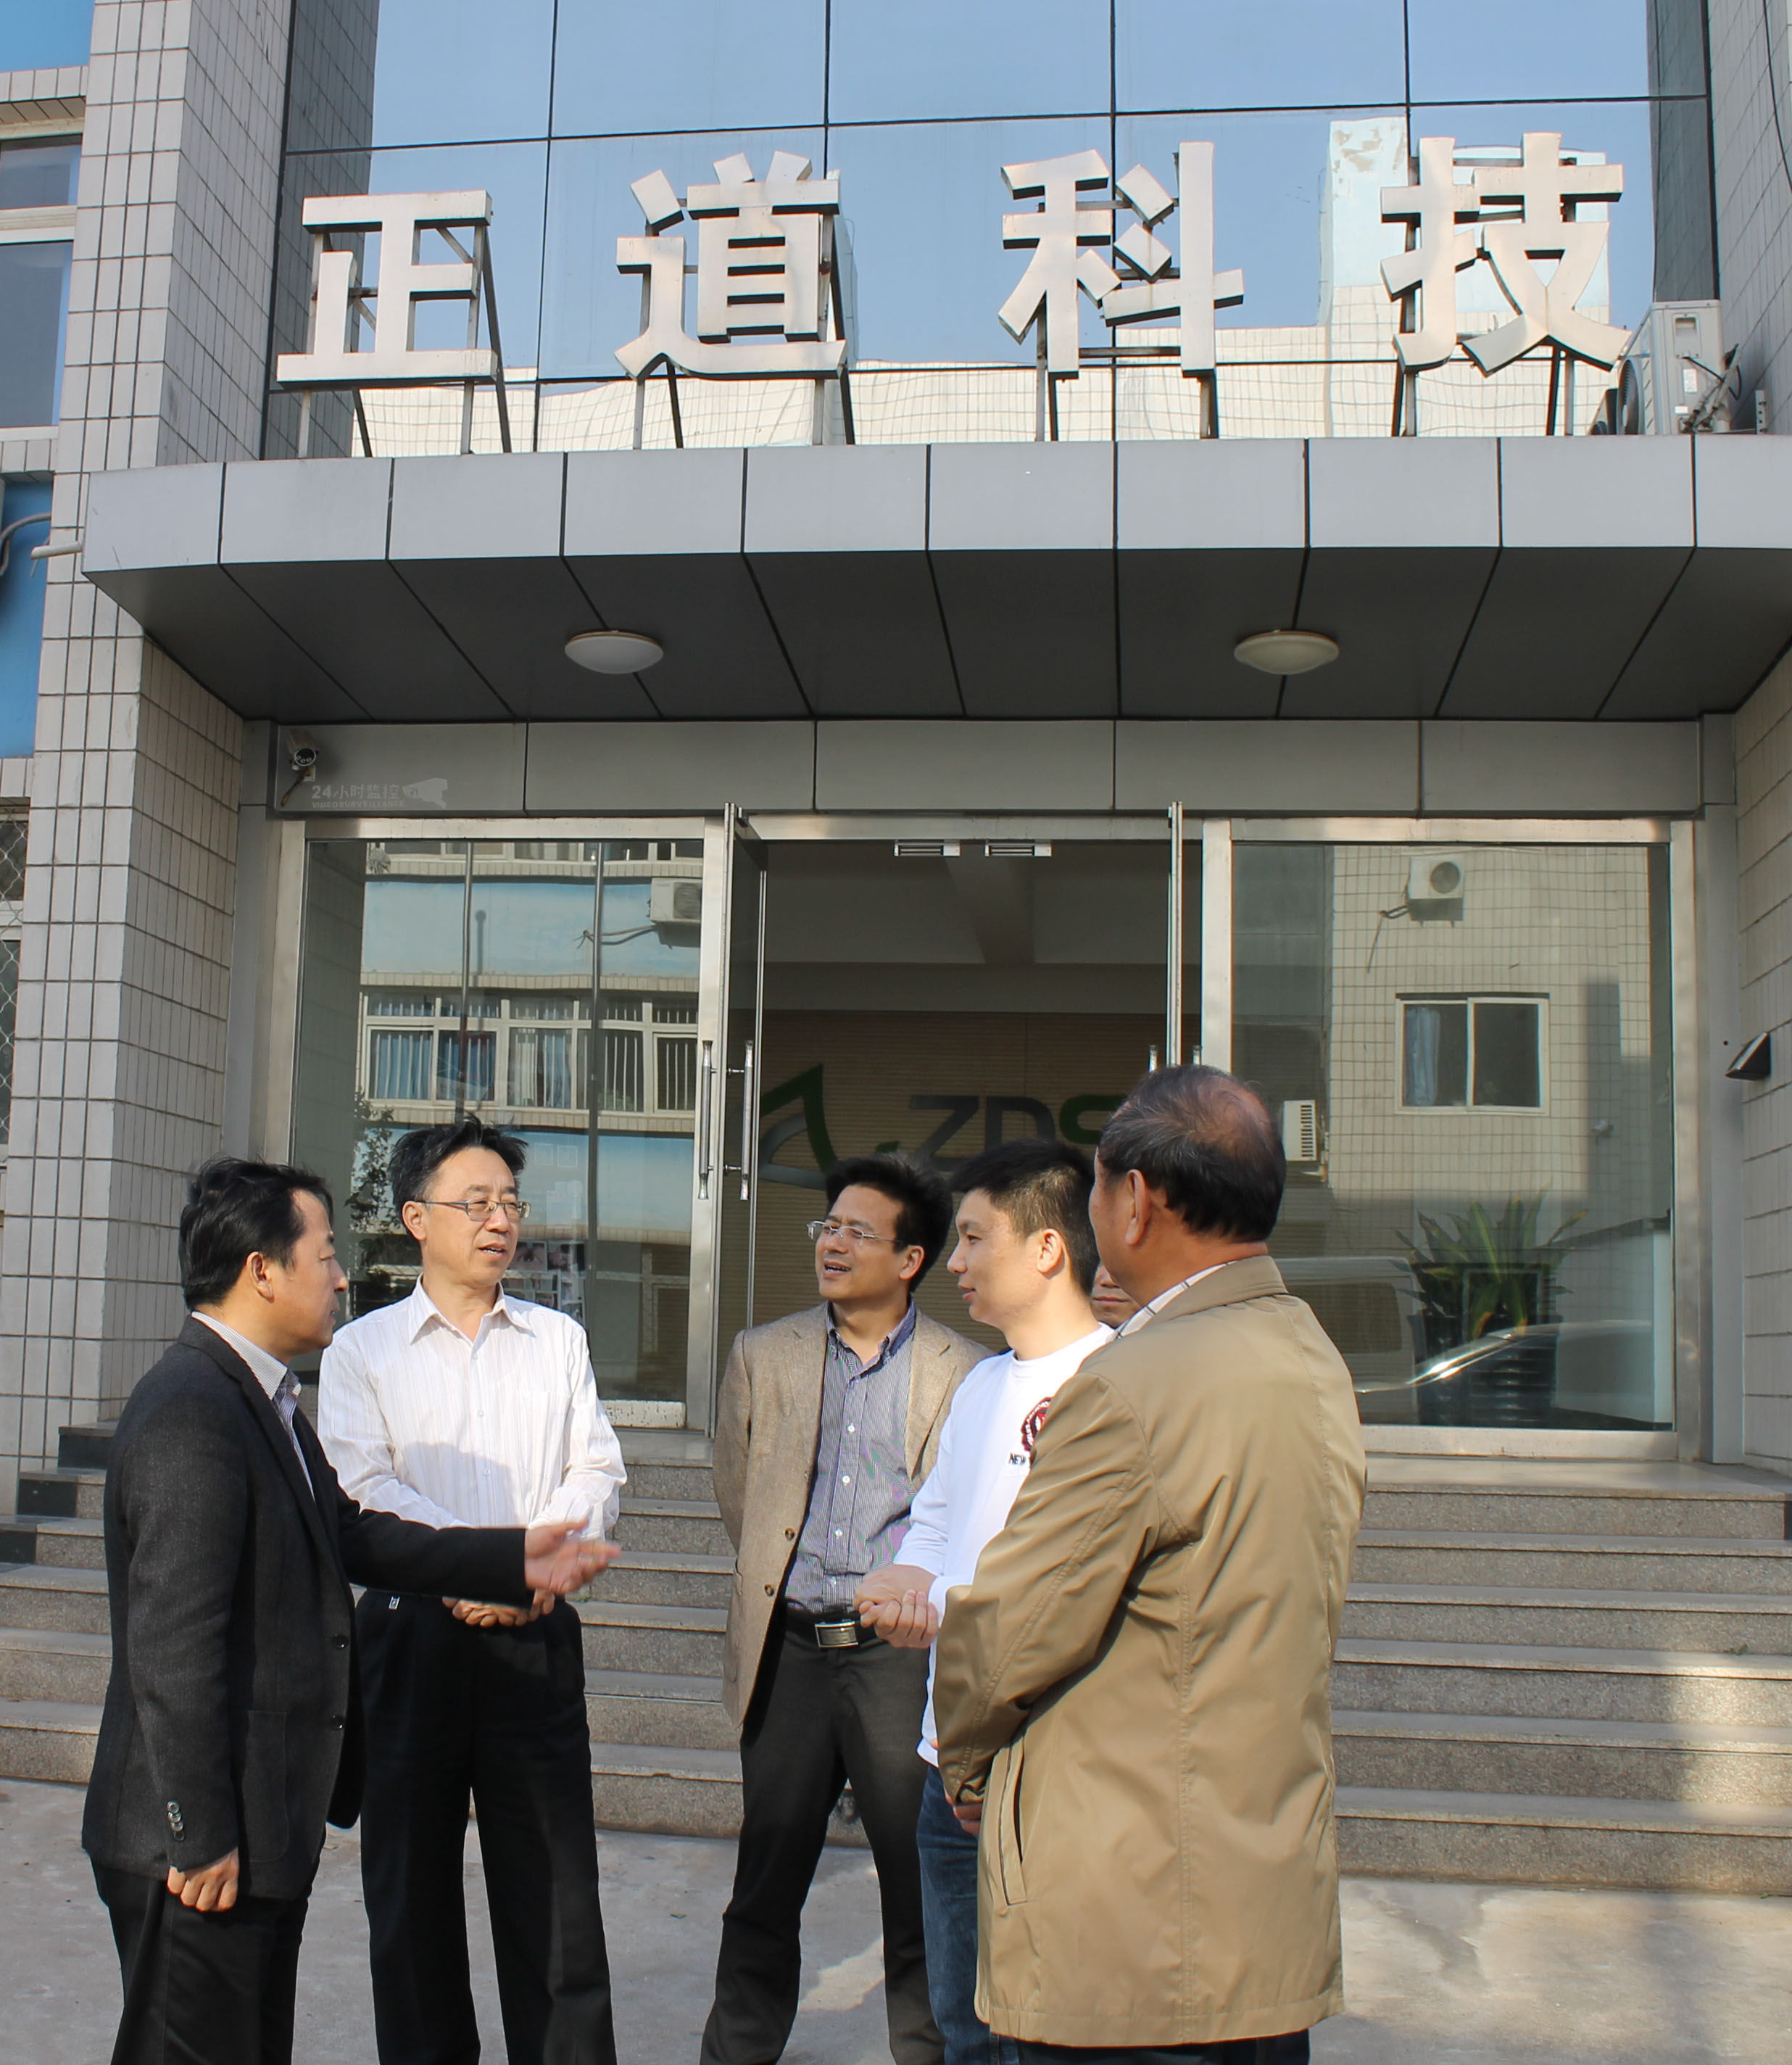 广州正道科技有限公司的发展现状 第4张